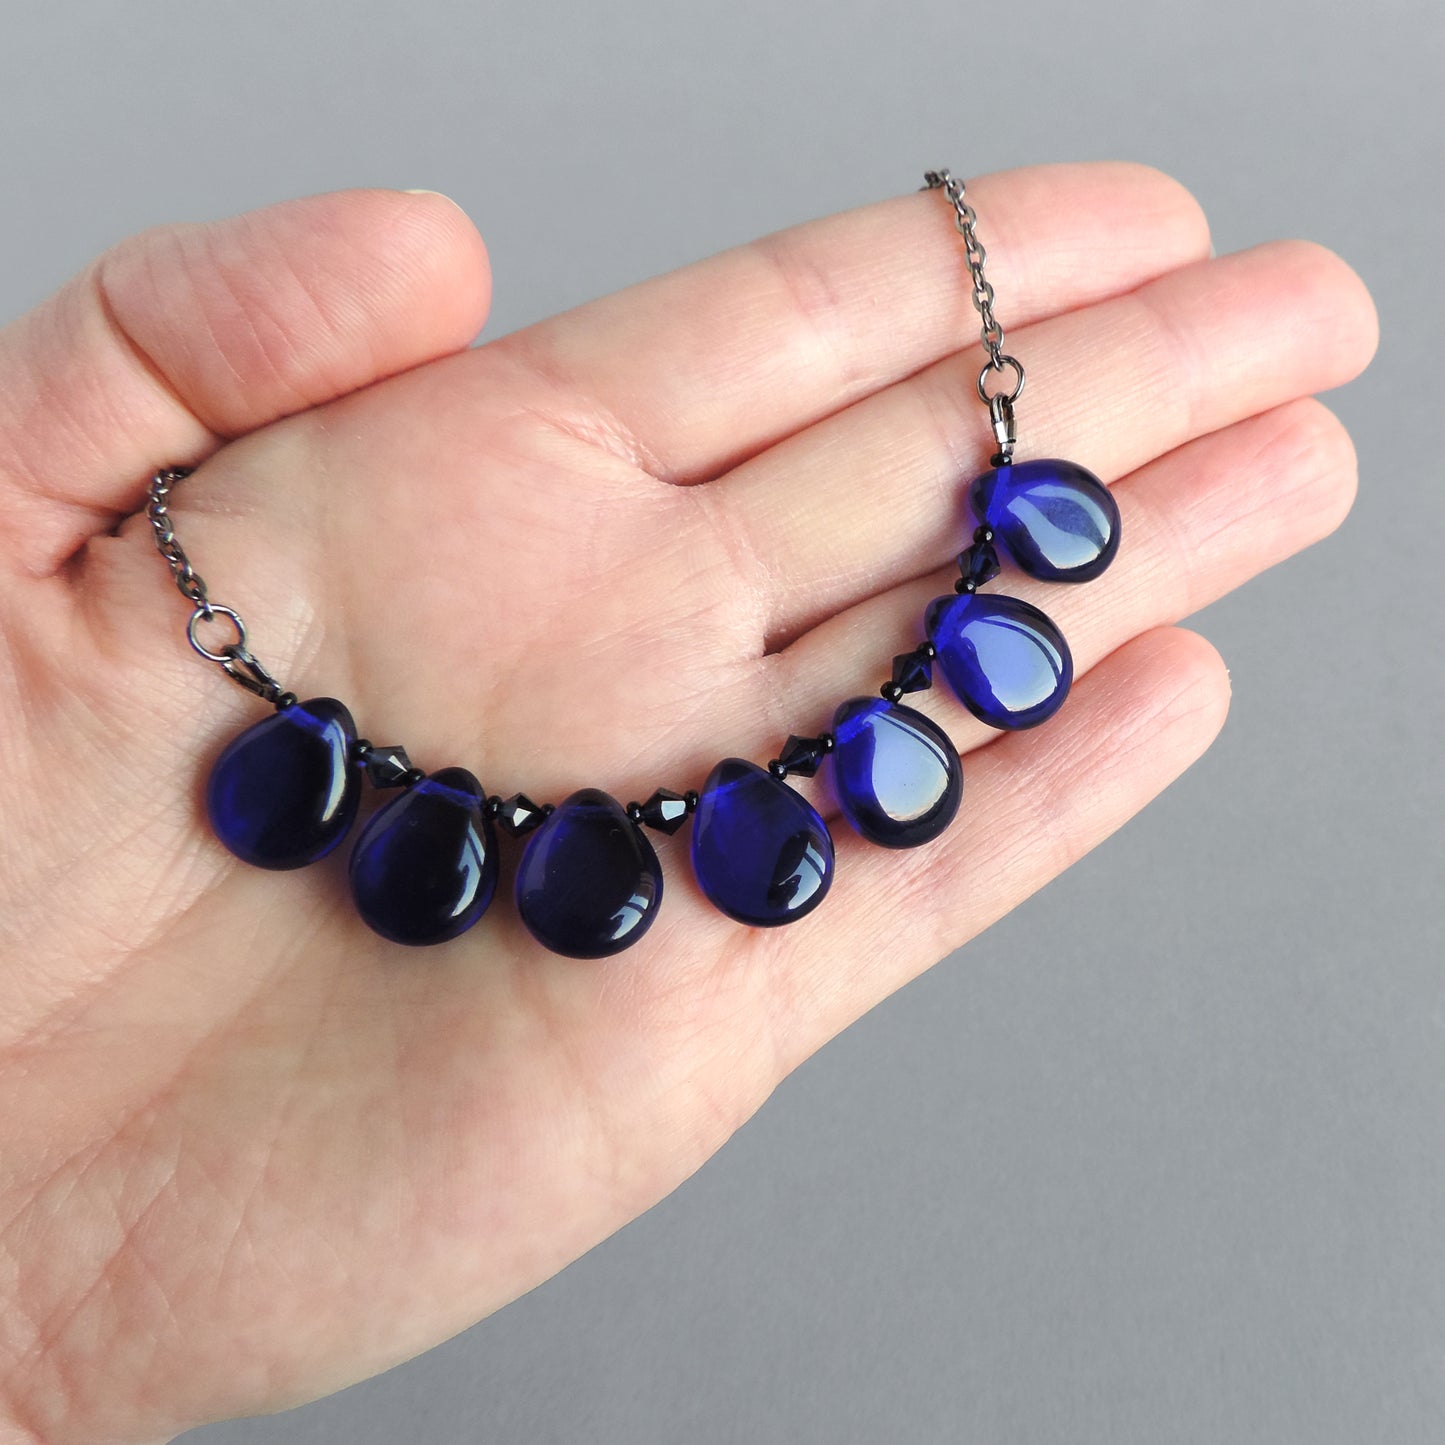 Dark blue statement necklace